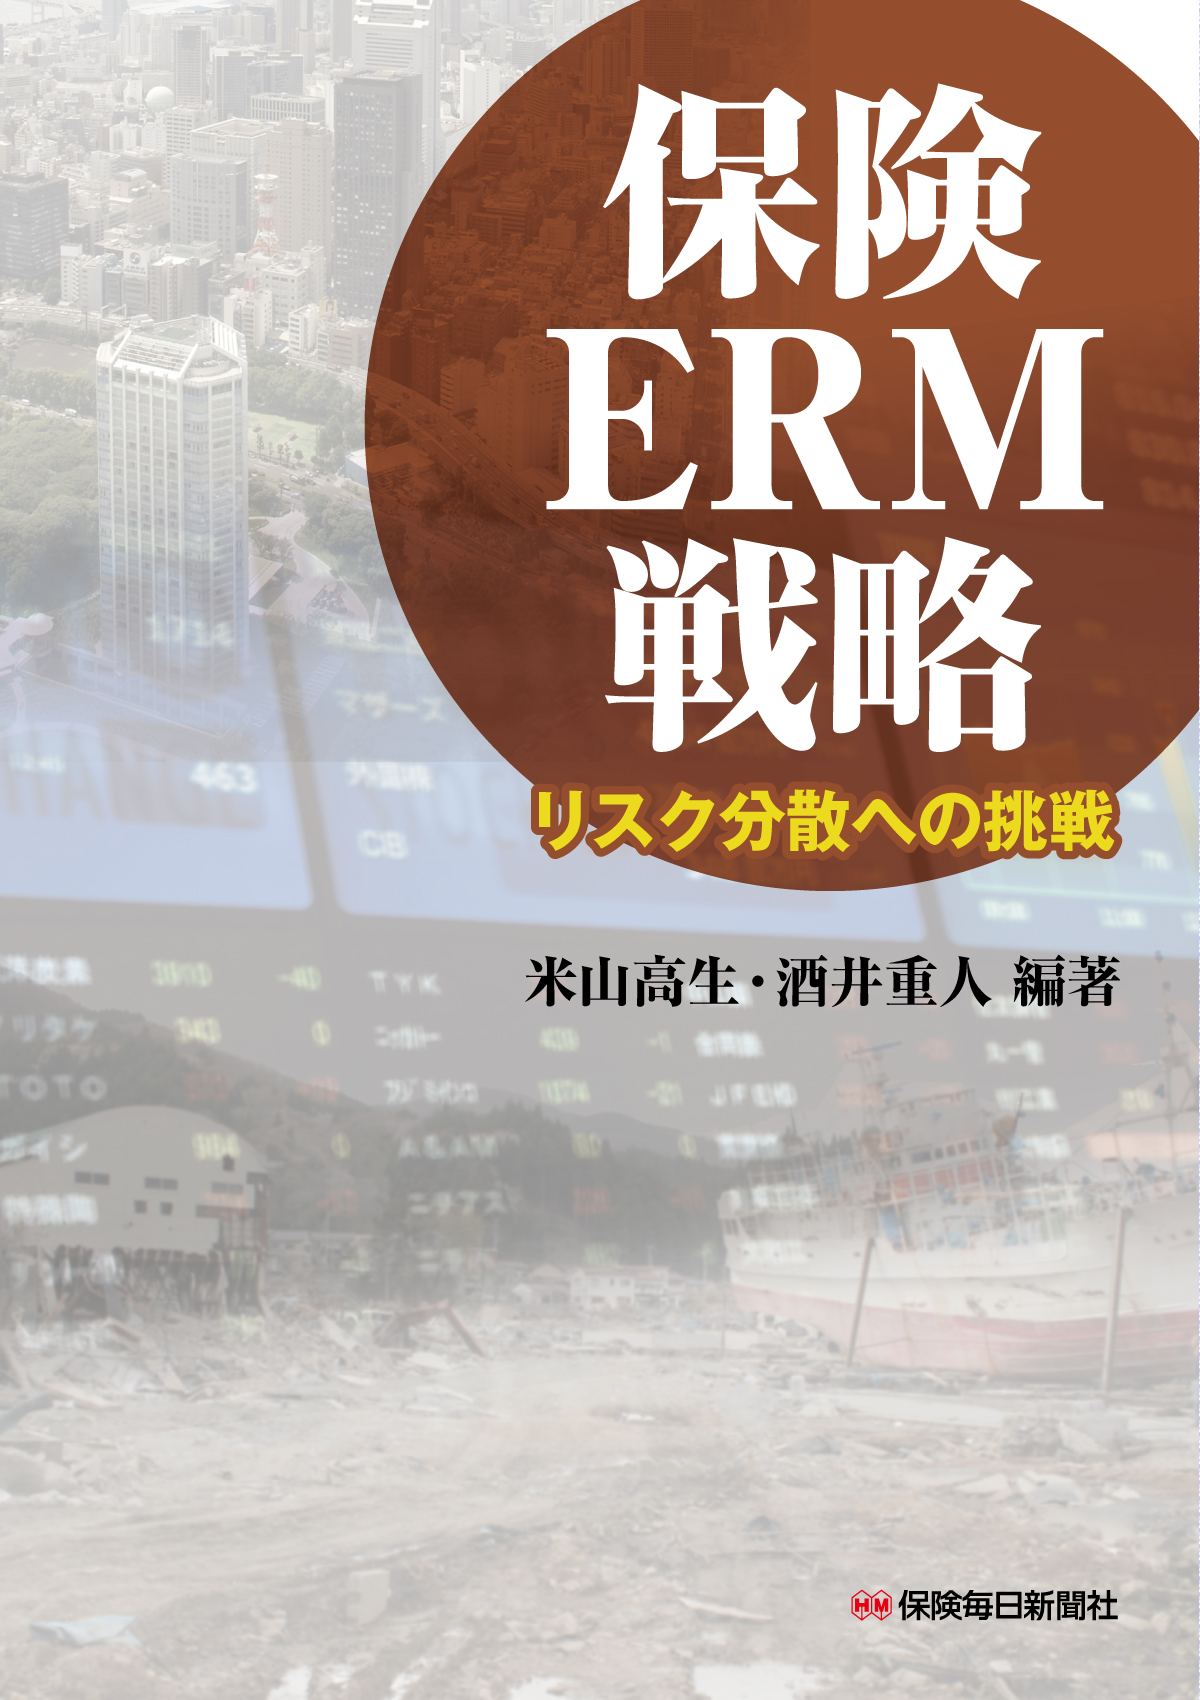 保険ERM戦略の商品画像